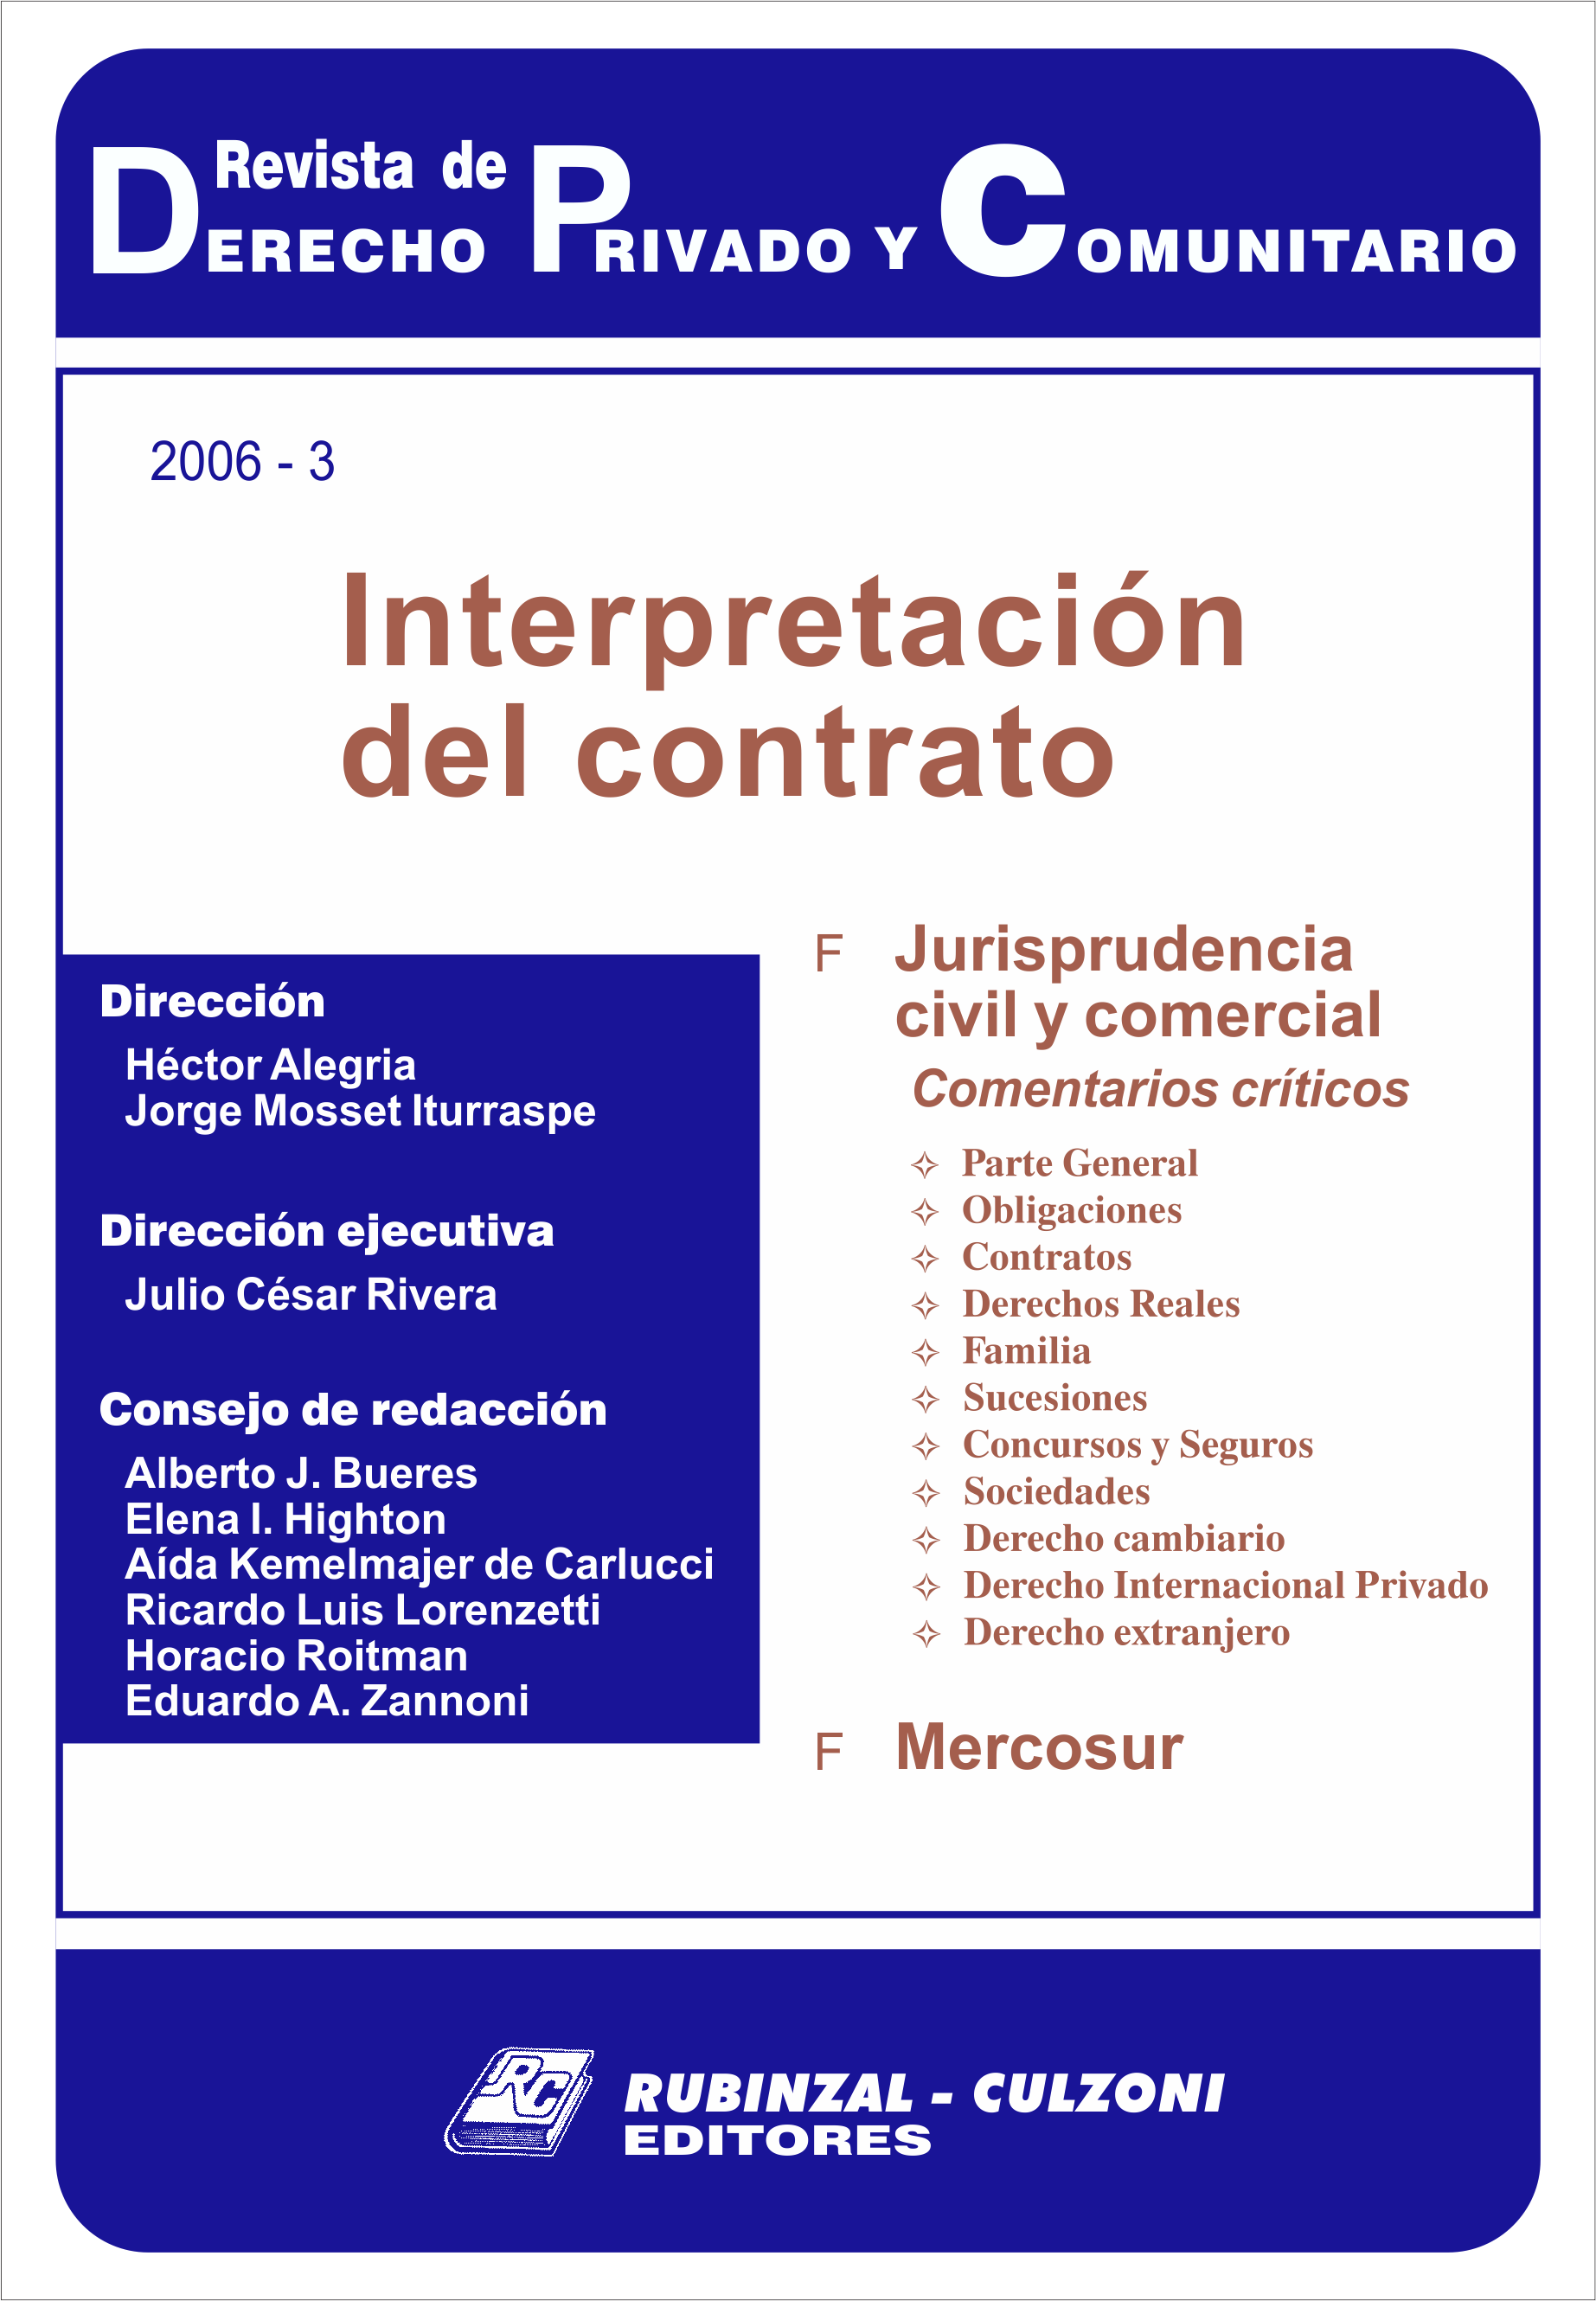 Revista de Derecho Privado y Comunitario - Interpretación del contrato